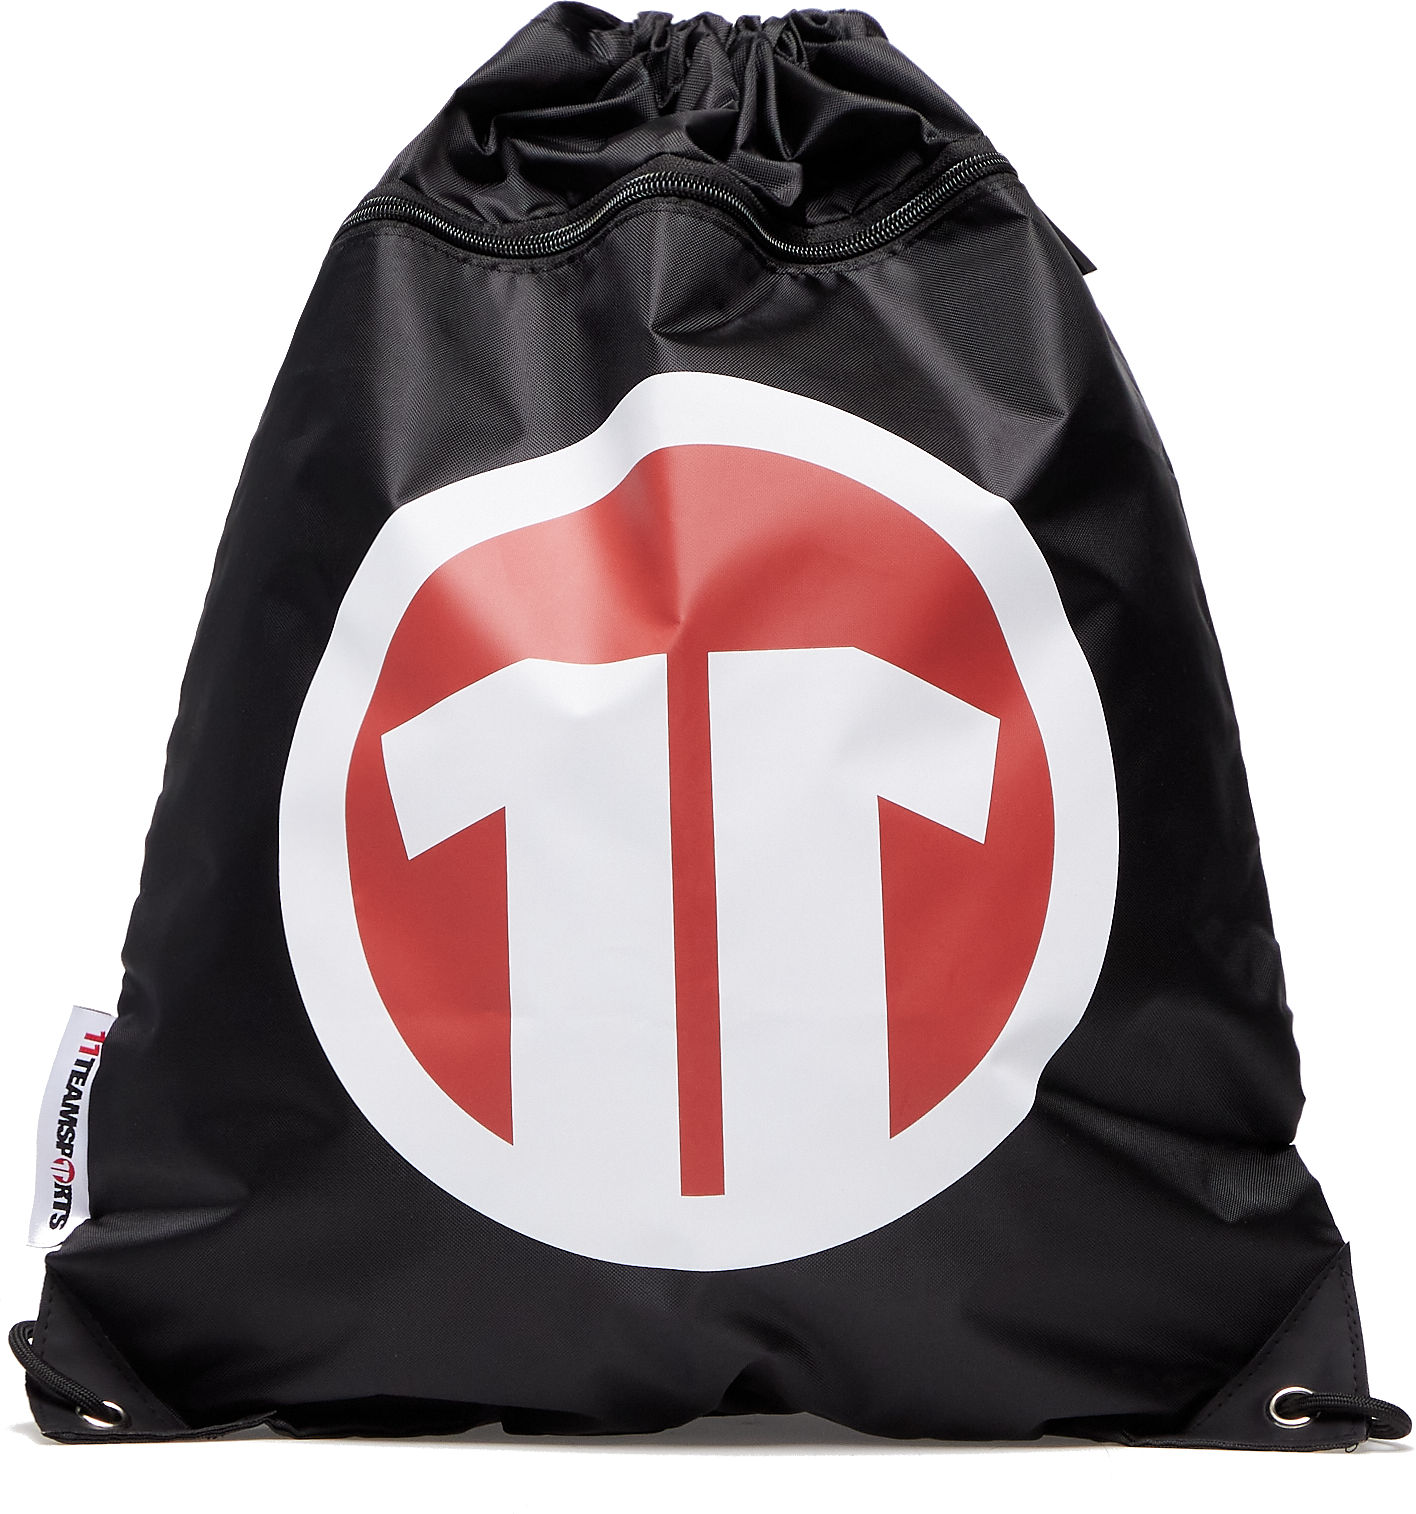 Vak na chrbát 11teamsports 11TS branded Drawstring bag